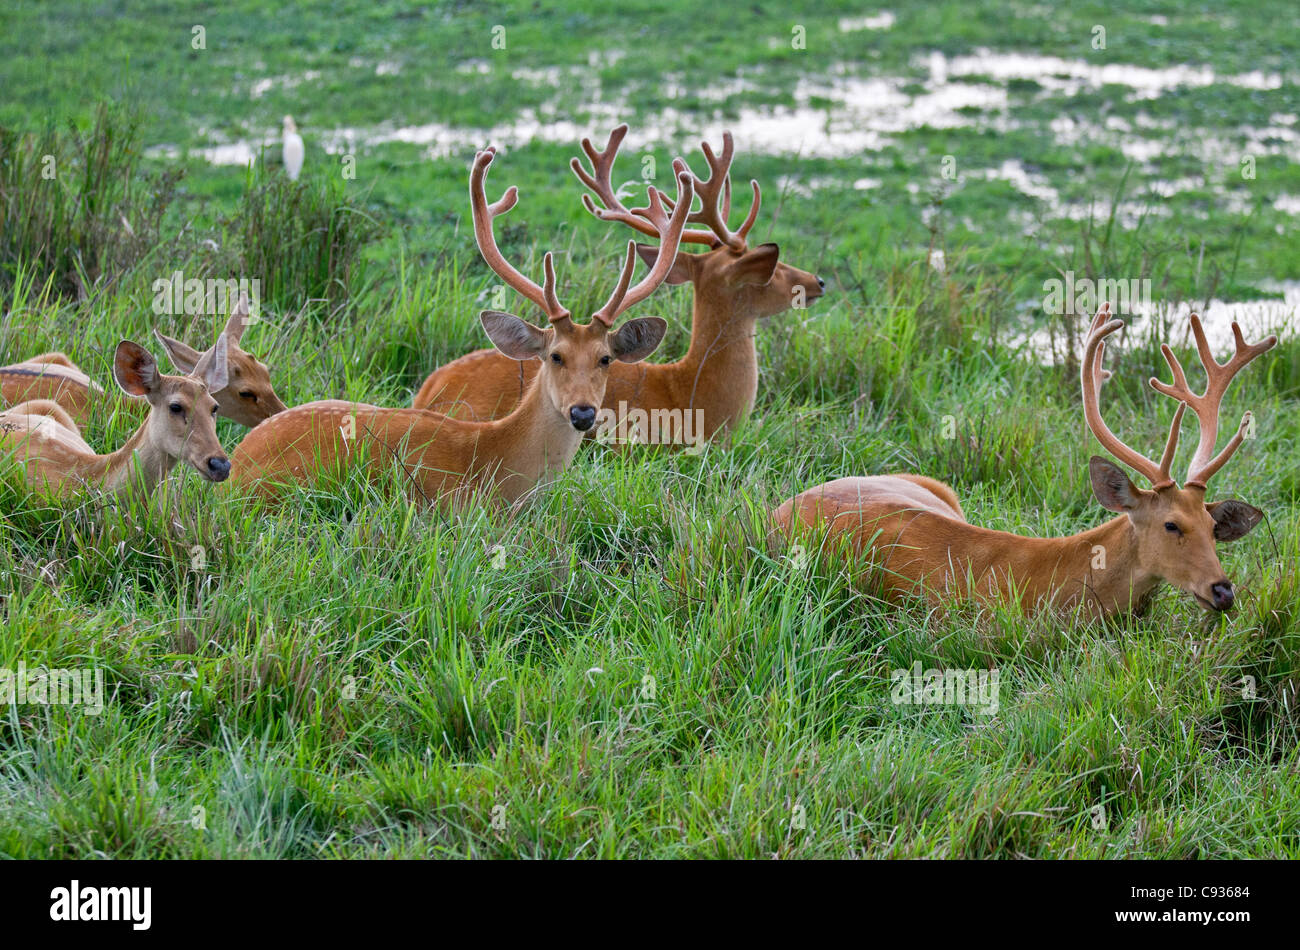 Un troupeau de cerfs des marais sur le bord d'un marais dans le parc national de Kaziranga. Ces cervidés sont une espèce en voie de disparition. Banque D'Images